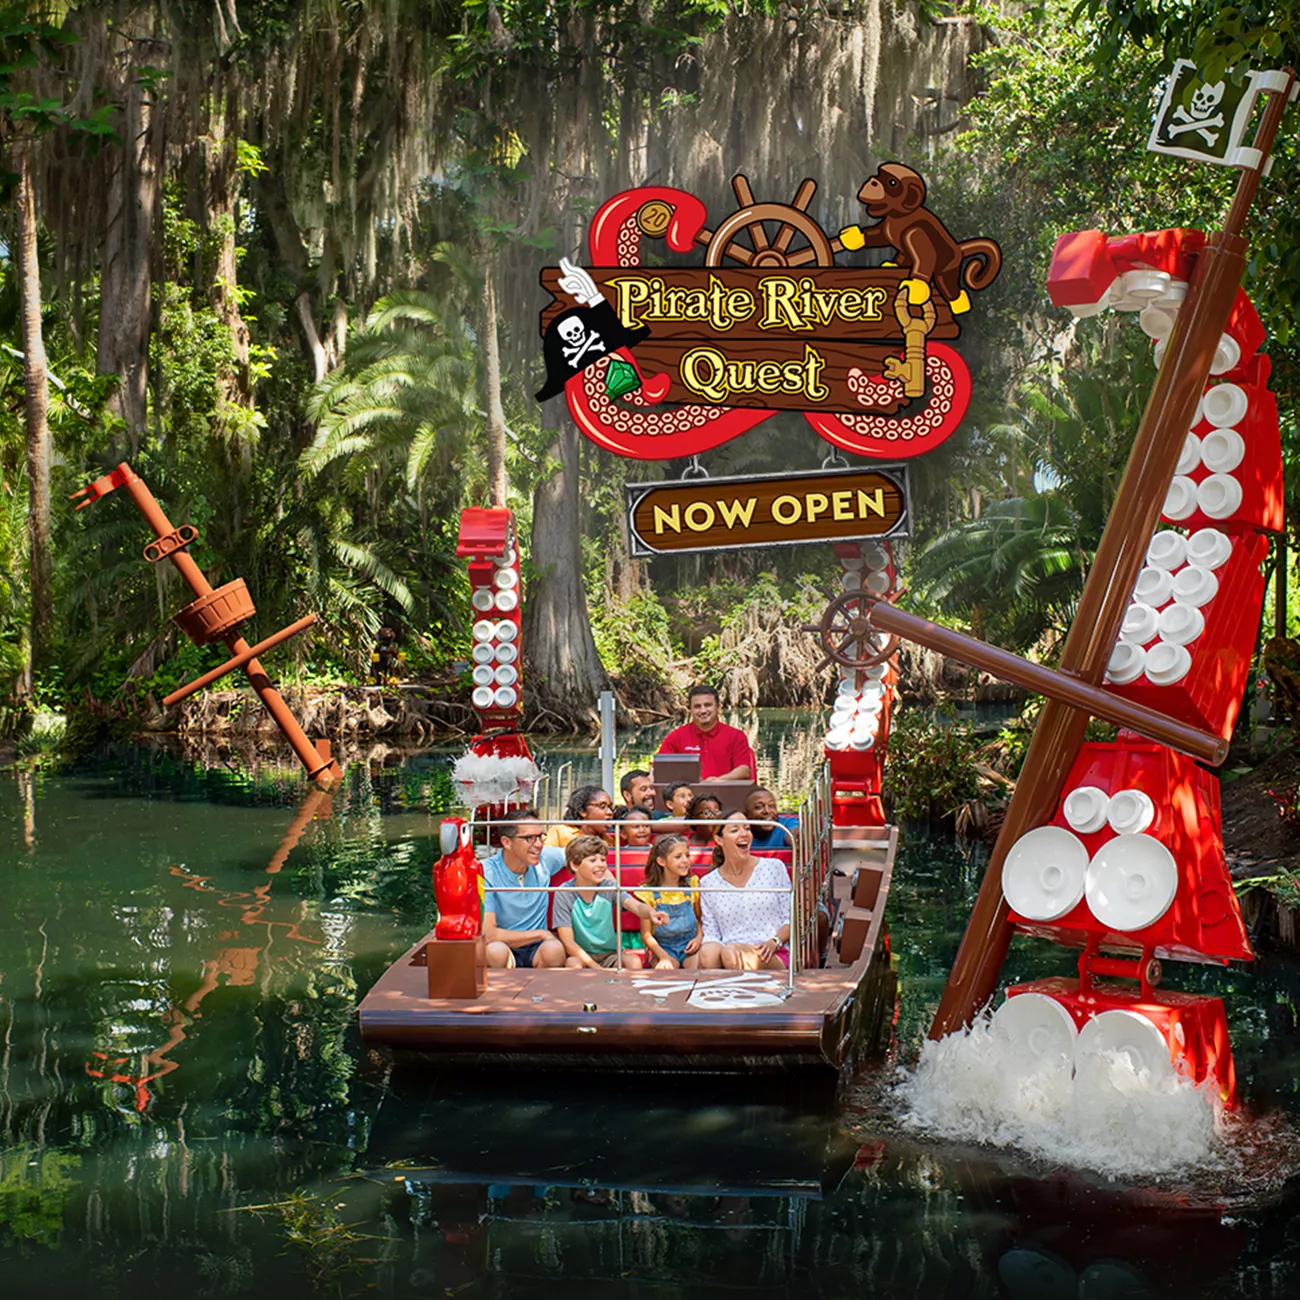 Pirate River Quest - Legoland Florida